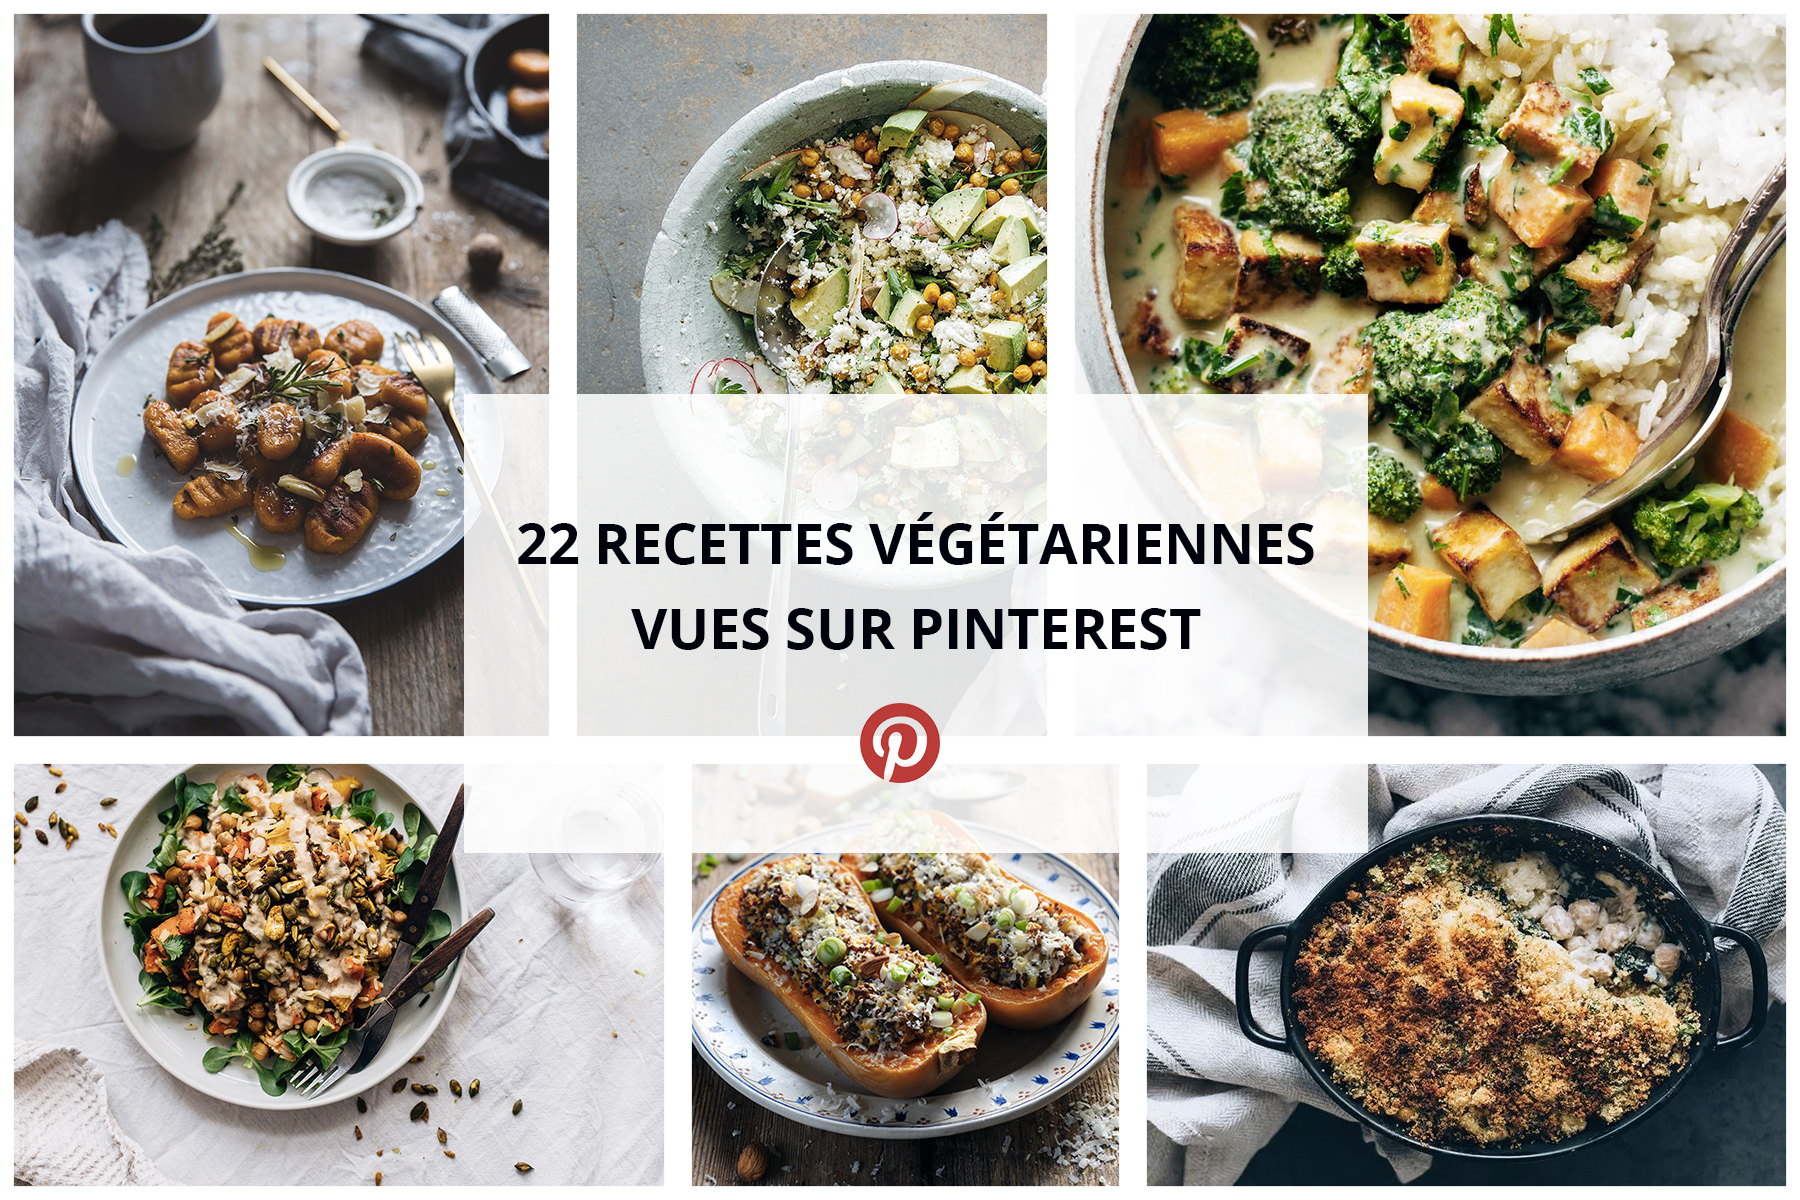 22 Recettes végétariennes repérées sur Pinterest